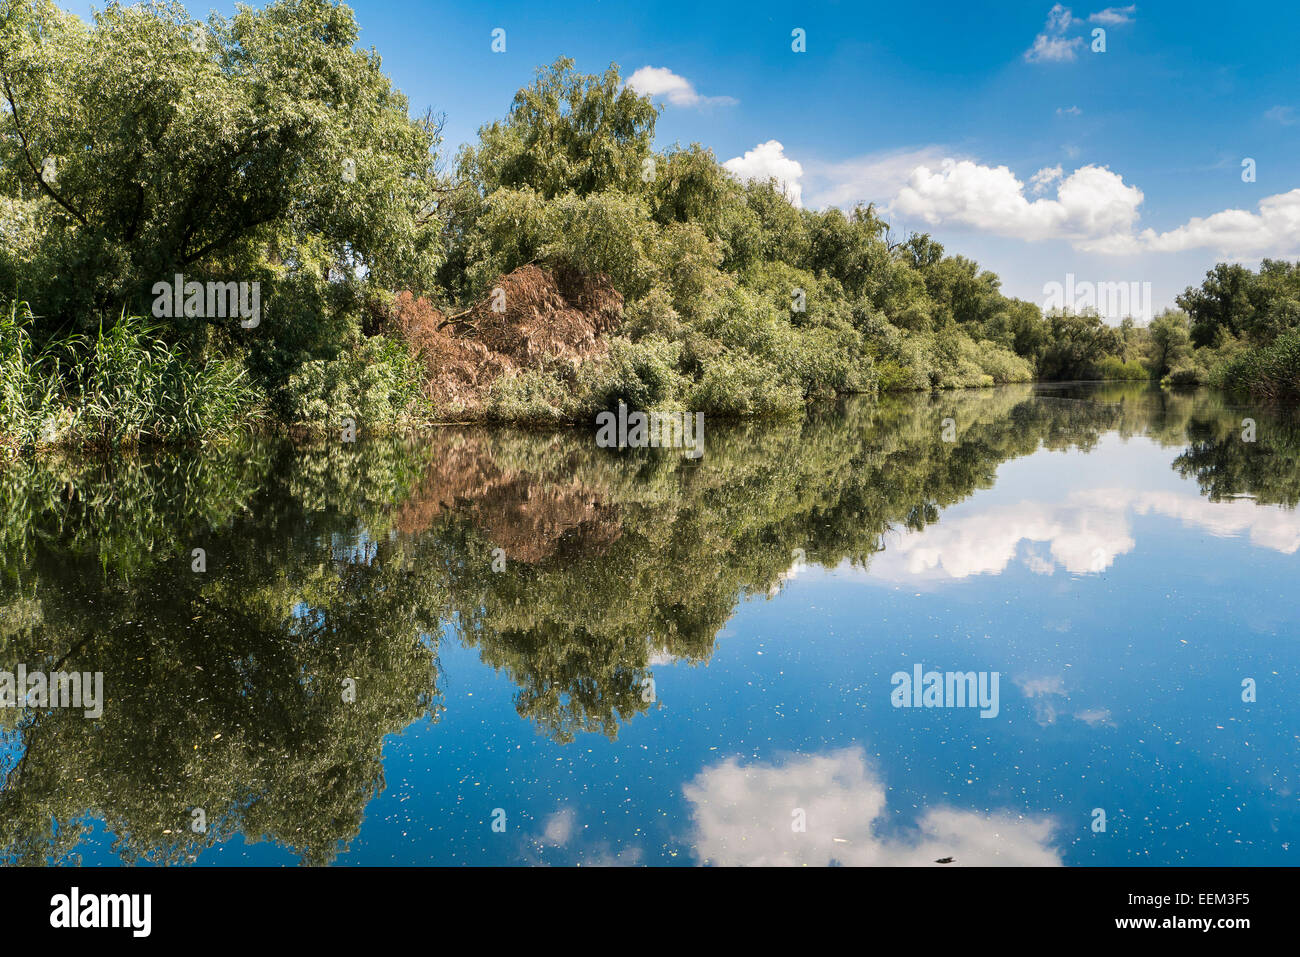 Danube Delta, channel through the lake district, Crisan, Dobrogea, Romania Stock Photo